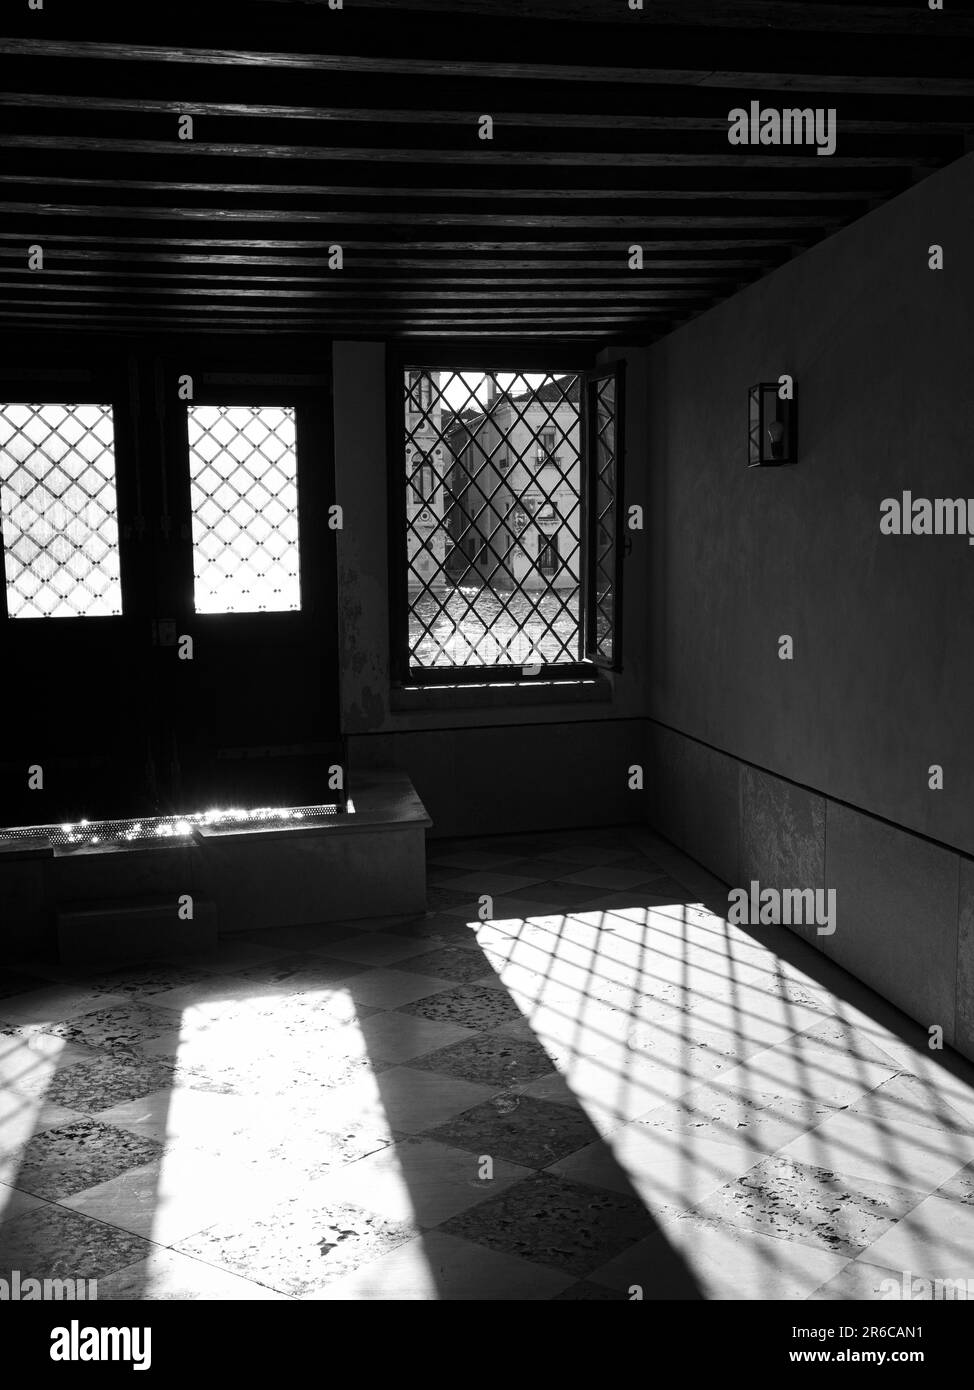 Questa foto è caratterizzata da uno spazio abitativo contemporaneo con numerose grandi finestre e una tavolozza di colori minimalisti di tonalità scure e bianco e nero Foto Stock